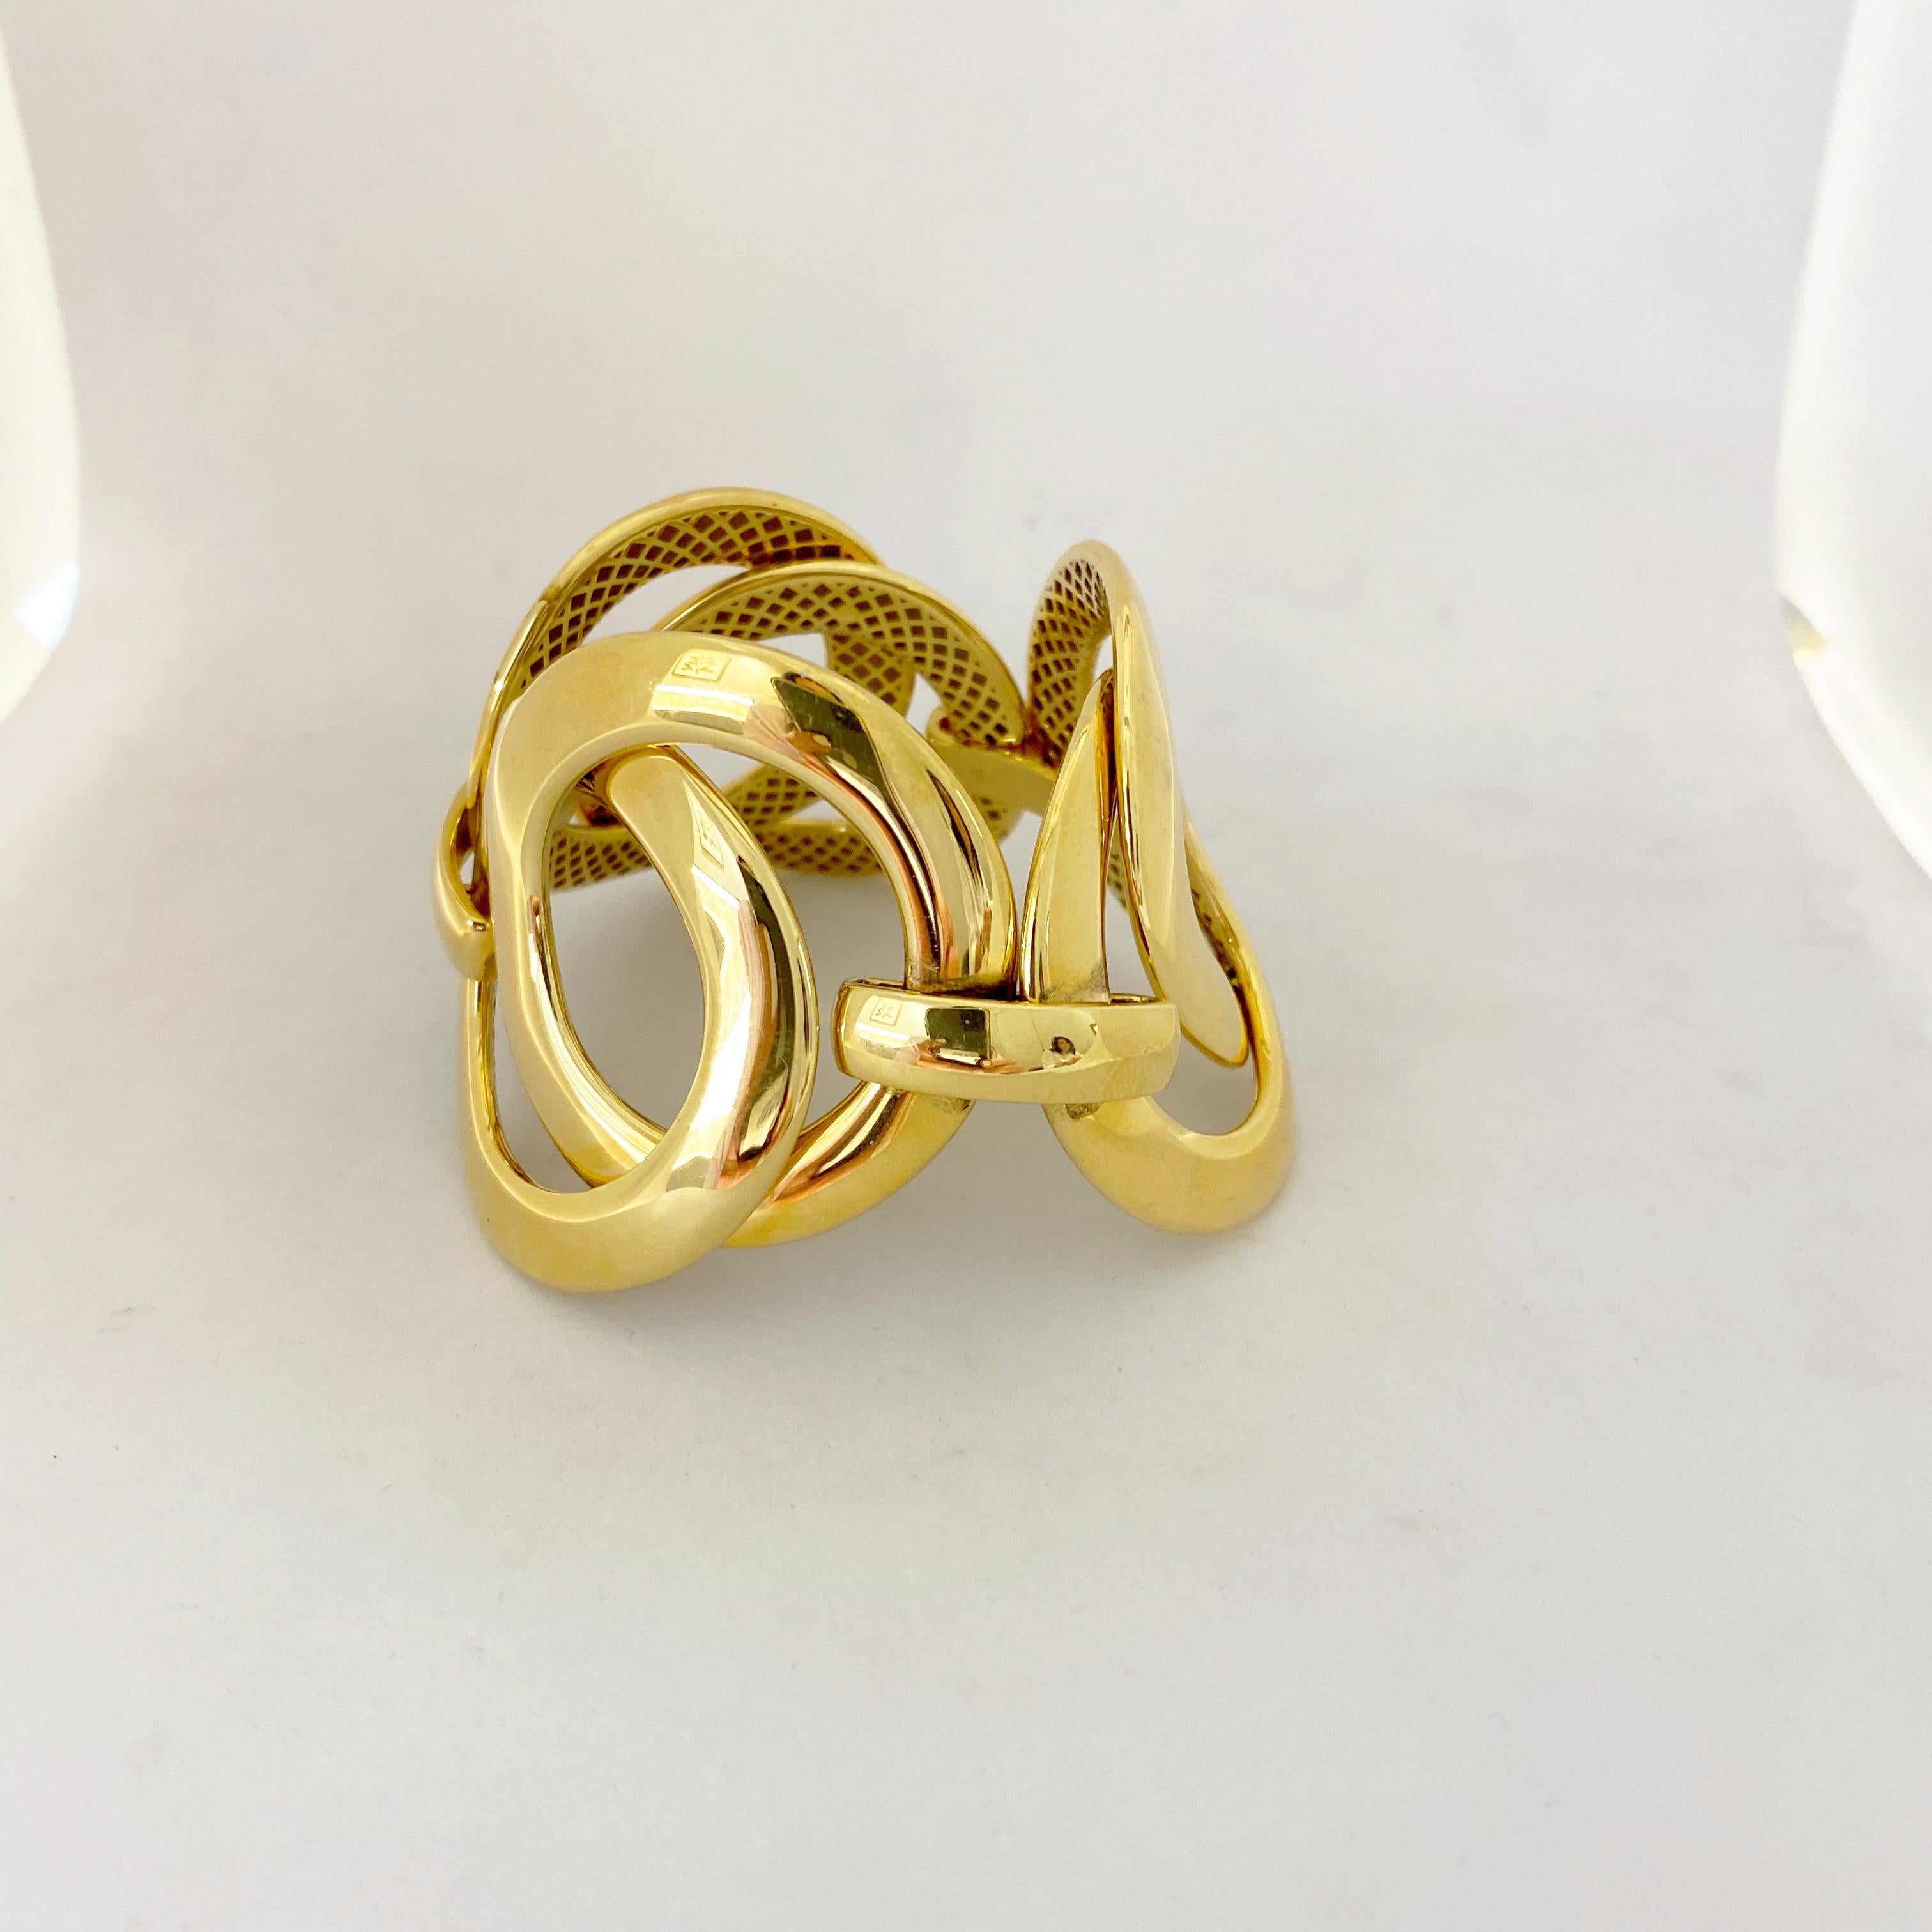 Antonio Papini Gioielli ist seit 40 Jahren in der Juwelierbranche tätig und stellt einen Meilenstein für Hunderte von Boutiquen dar. 
Dieses Armband aus 18 Karat Gelbgold besteht aus 6 ineinander greifenden, hochglanzpolierten Gliedern. Wenn das